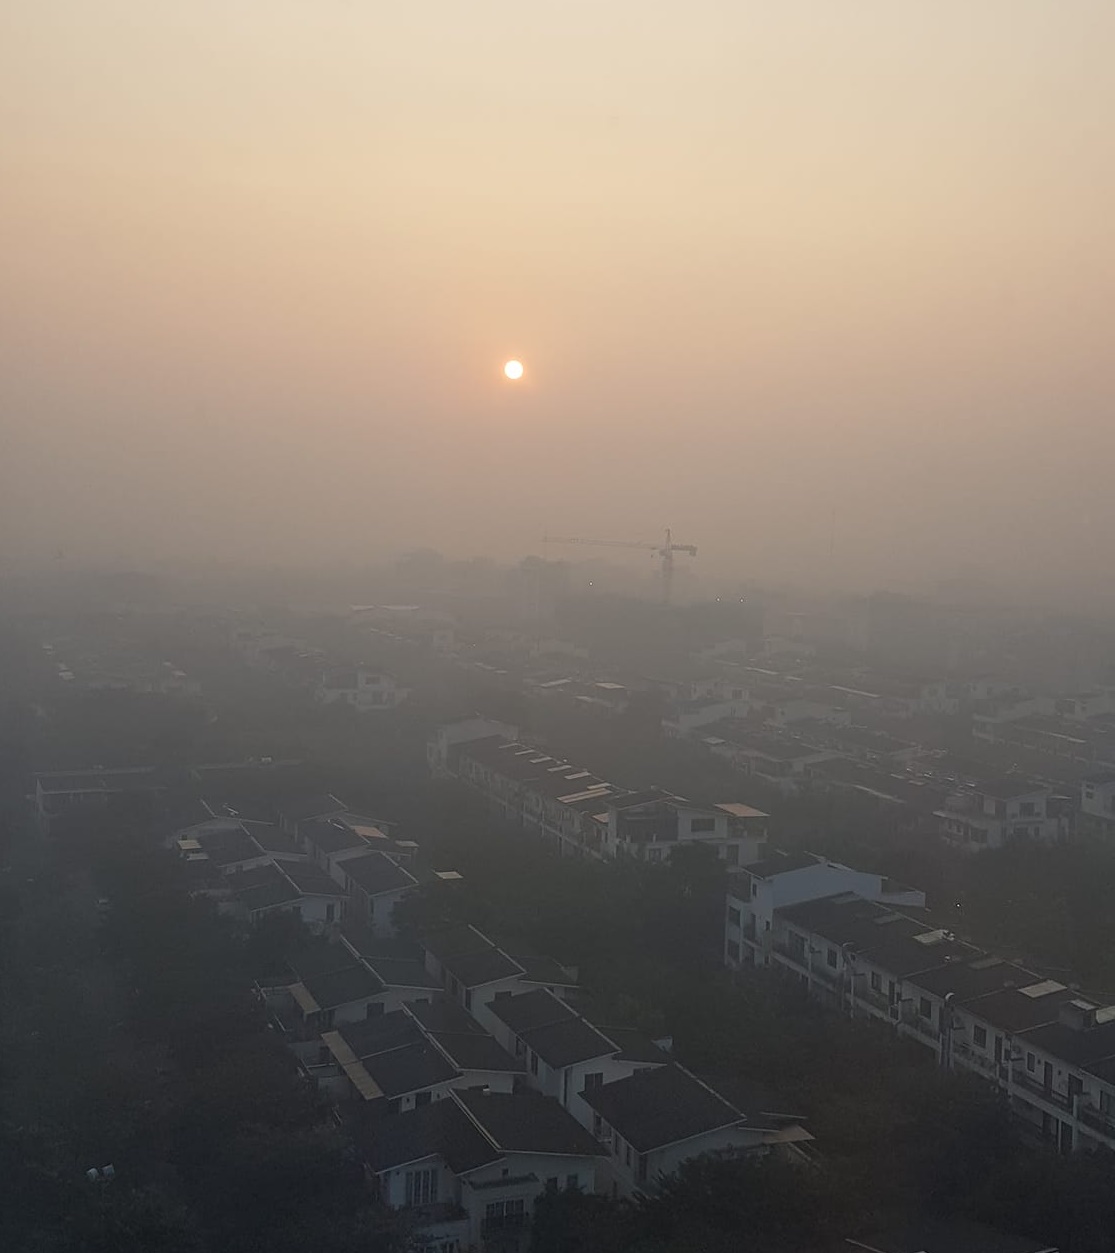 Hình ảnh lúc 6h30 sáng nhìn từ Ecopark cho thấy, dù mặt trời đã lên khá cao nhưng toàn khu vực vẫn chìm trong mù sương ô nhiễm